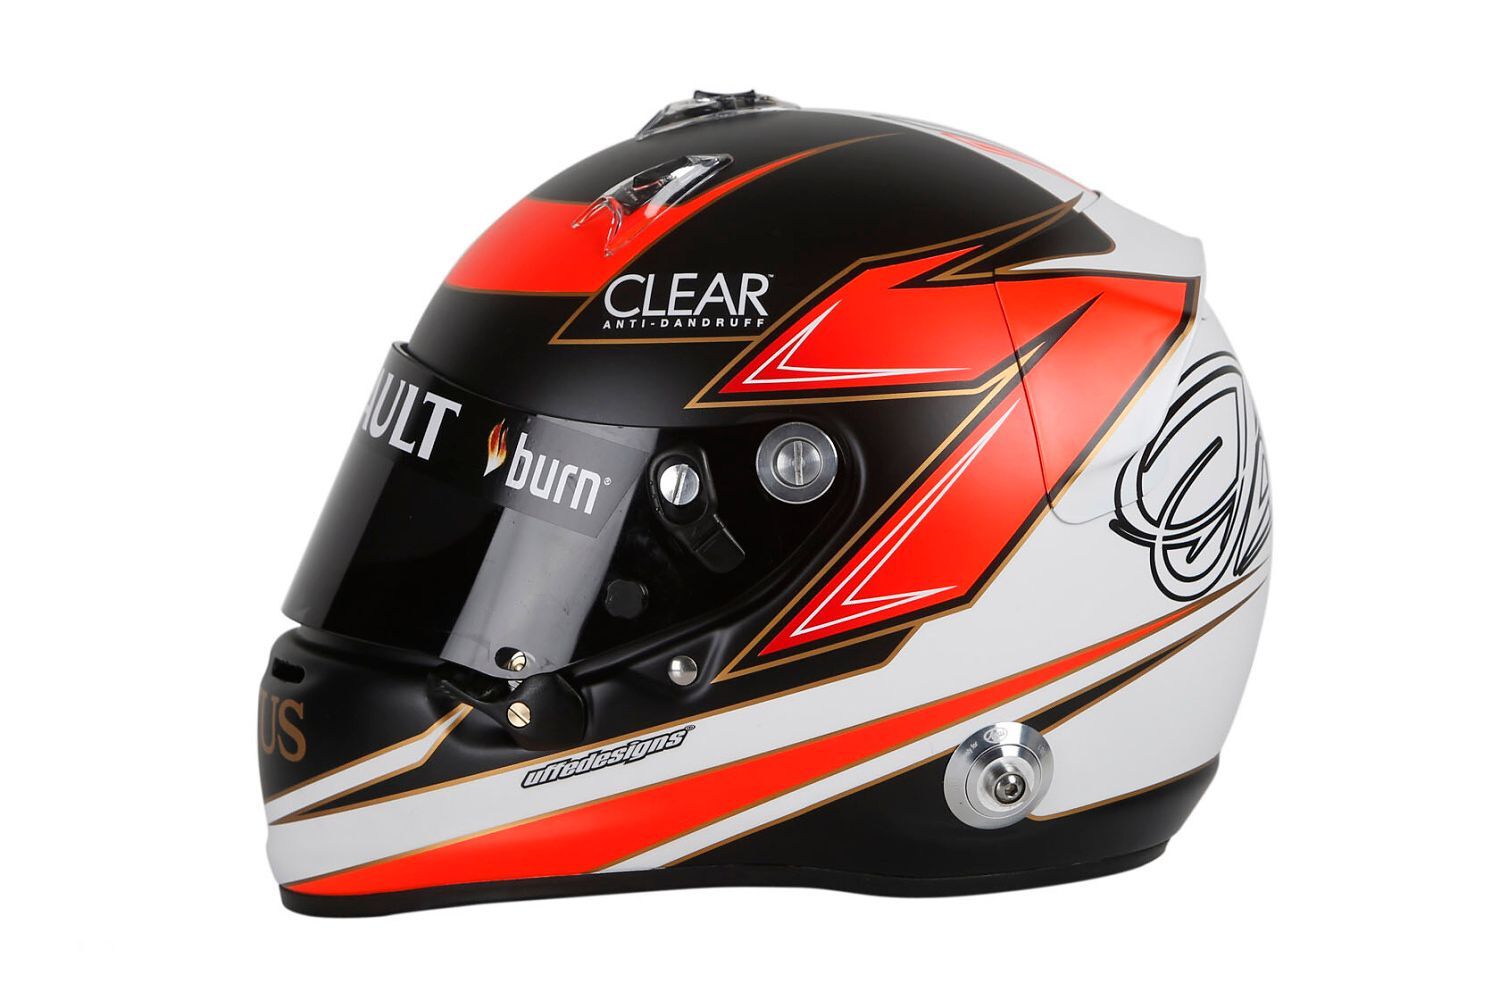 Formule 1, helma: Kimi Räikkönen